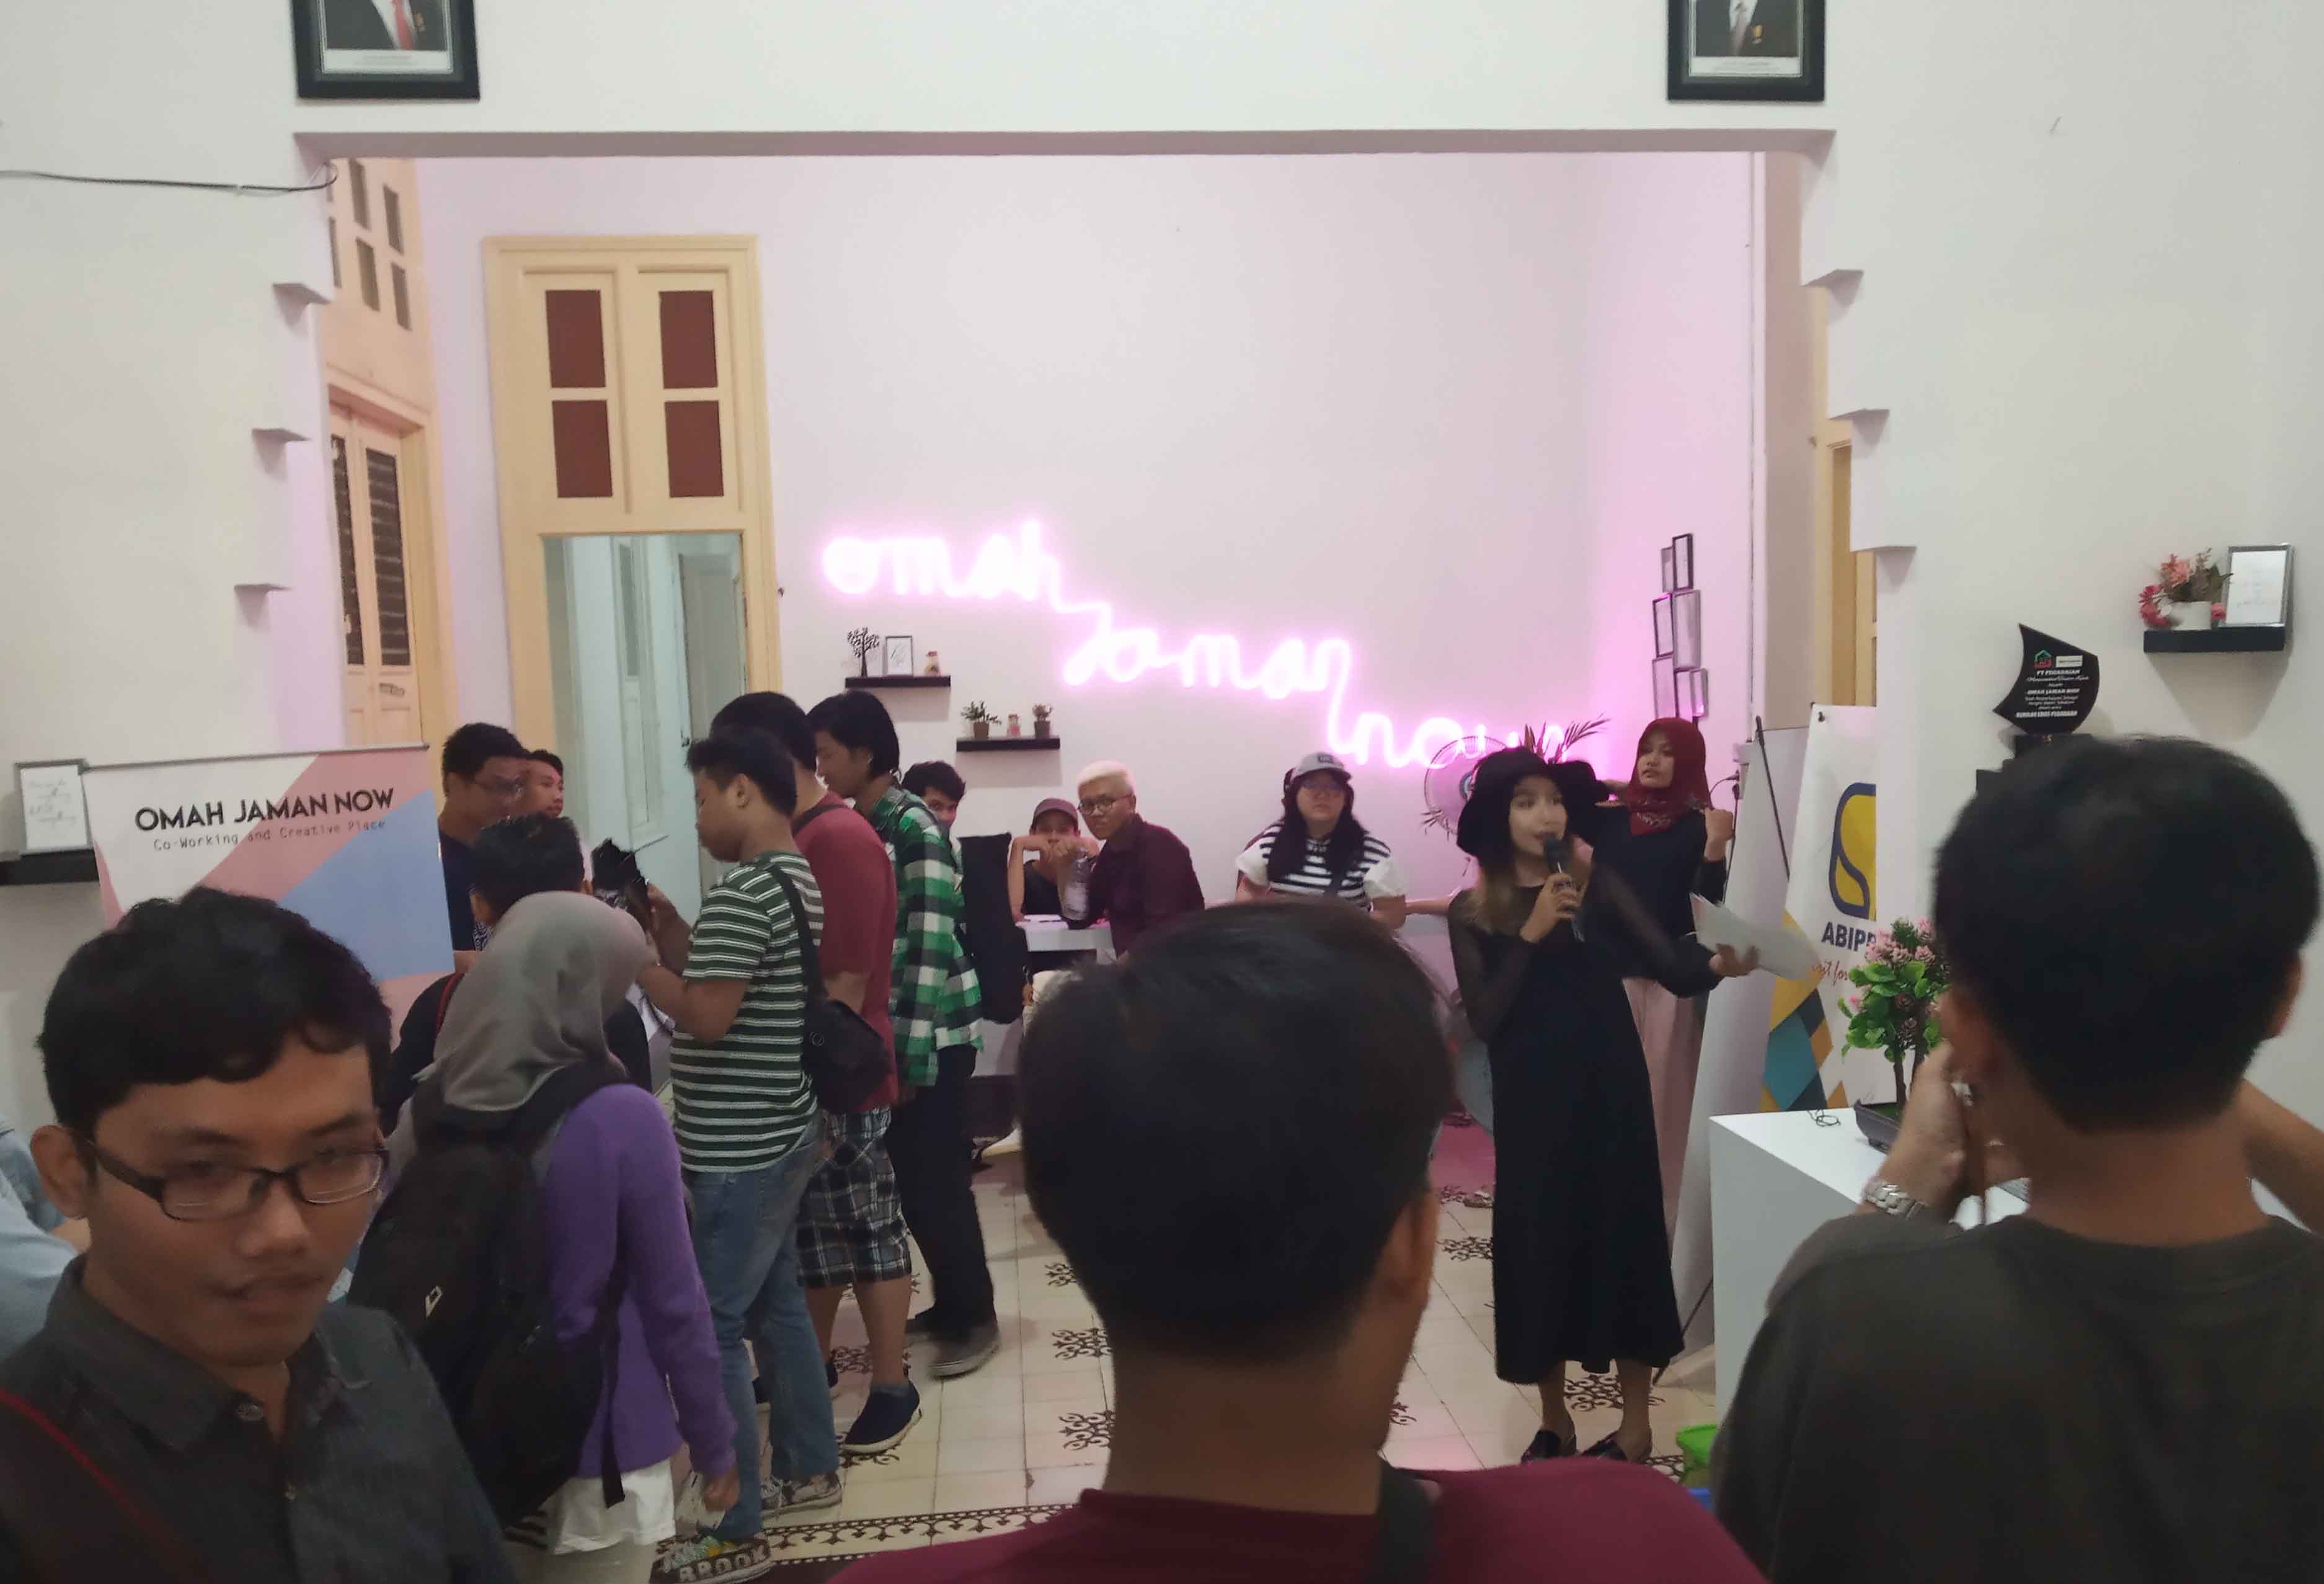 Para Audiens sedang bercengkrama dengan komunitas Lemari Buku-Buku dan Analog Surabaya di acara Coiler Zoom yang digelar Omah Jaman Now. (Foto: ngopibareng.id)